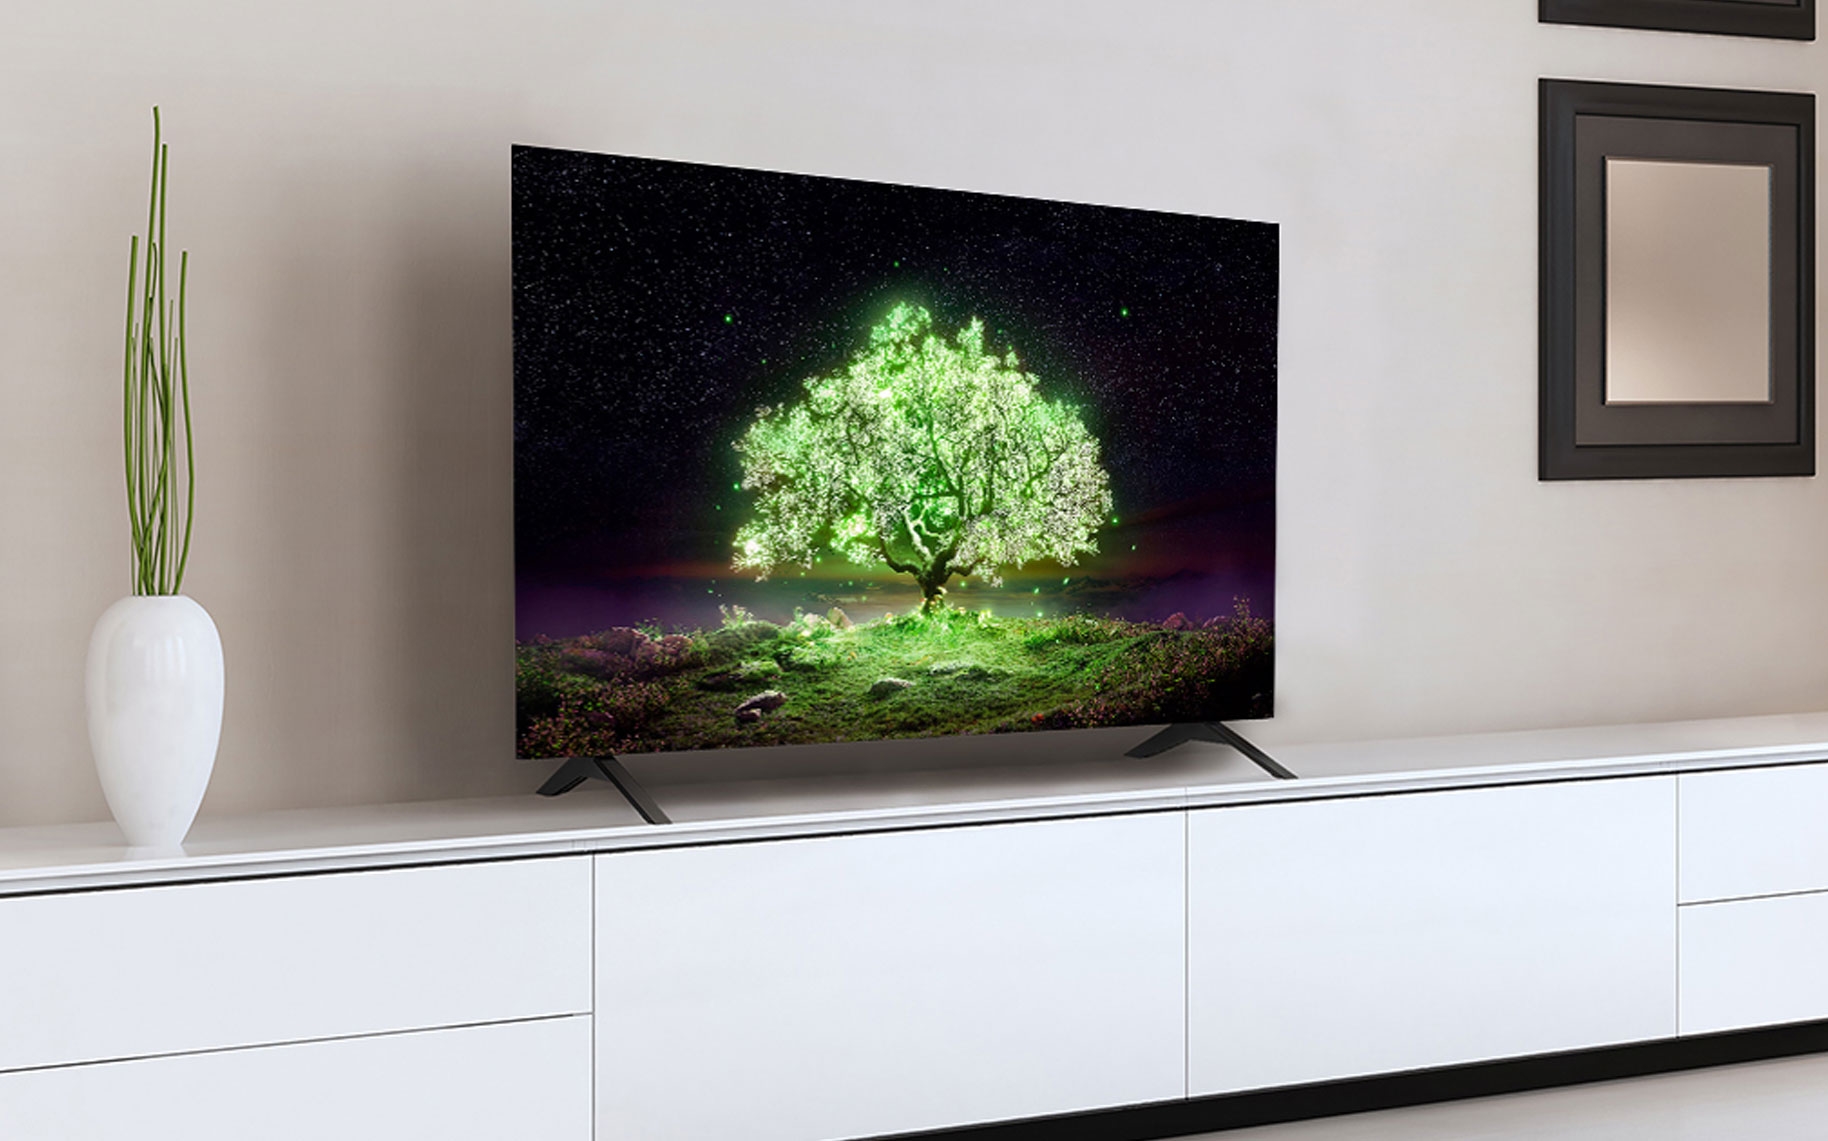 Oportunidad! Smart TV LG OLED de 55 pulgadas por menos de 1.000 euros